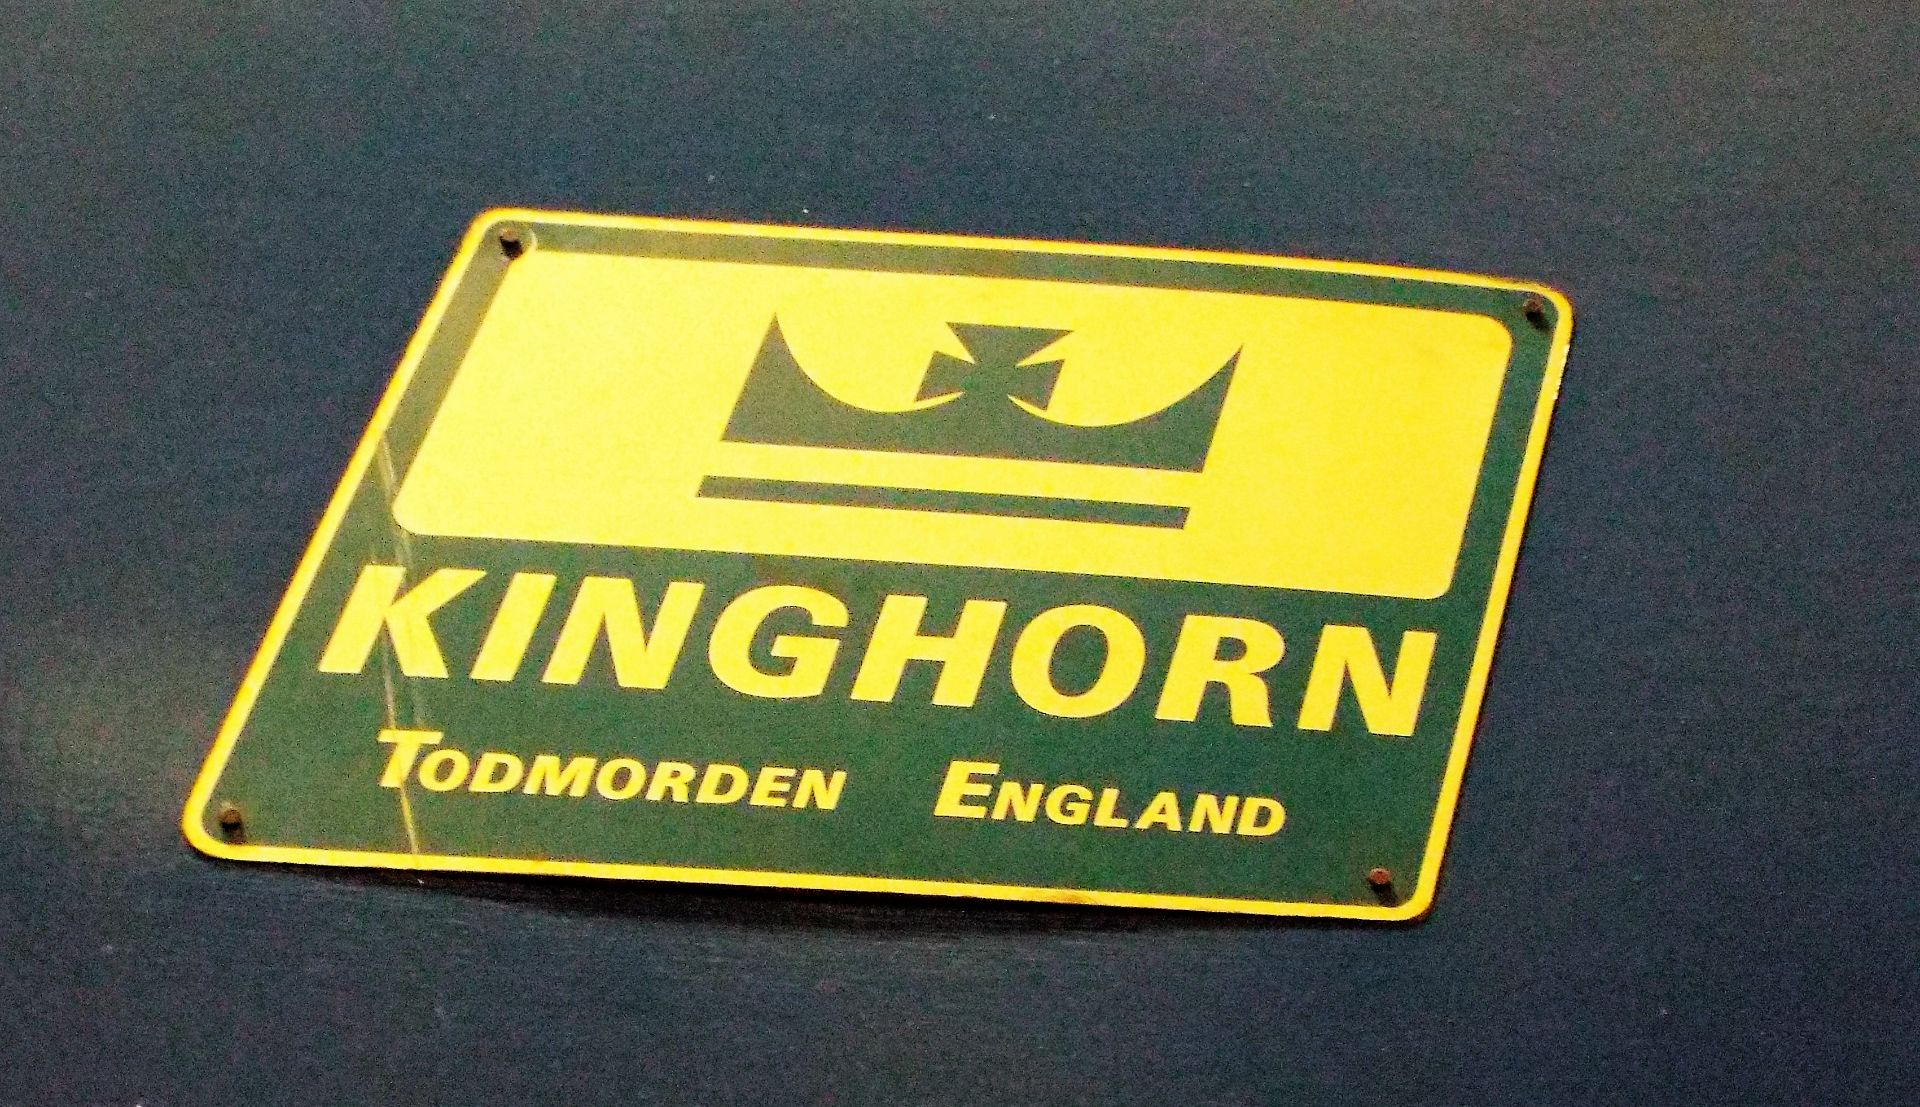 Kinghorn Todmorden (now Kinghorn Steco) 240 Tonne Mechanical Press - Image 2 of 13